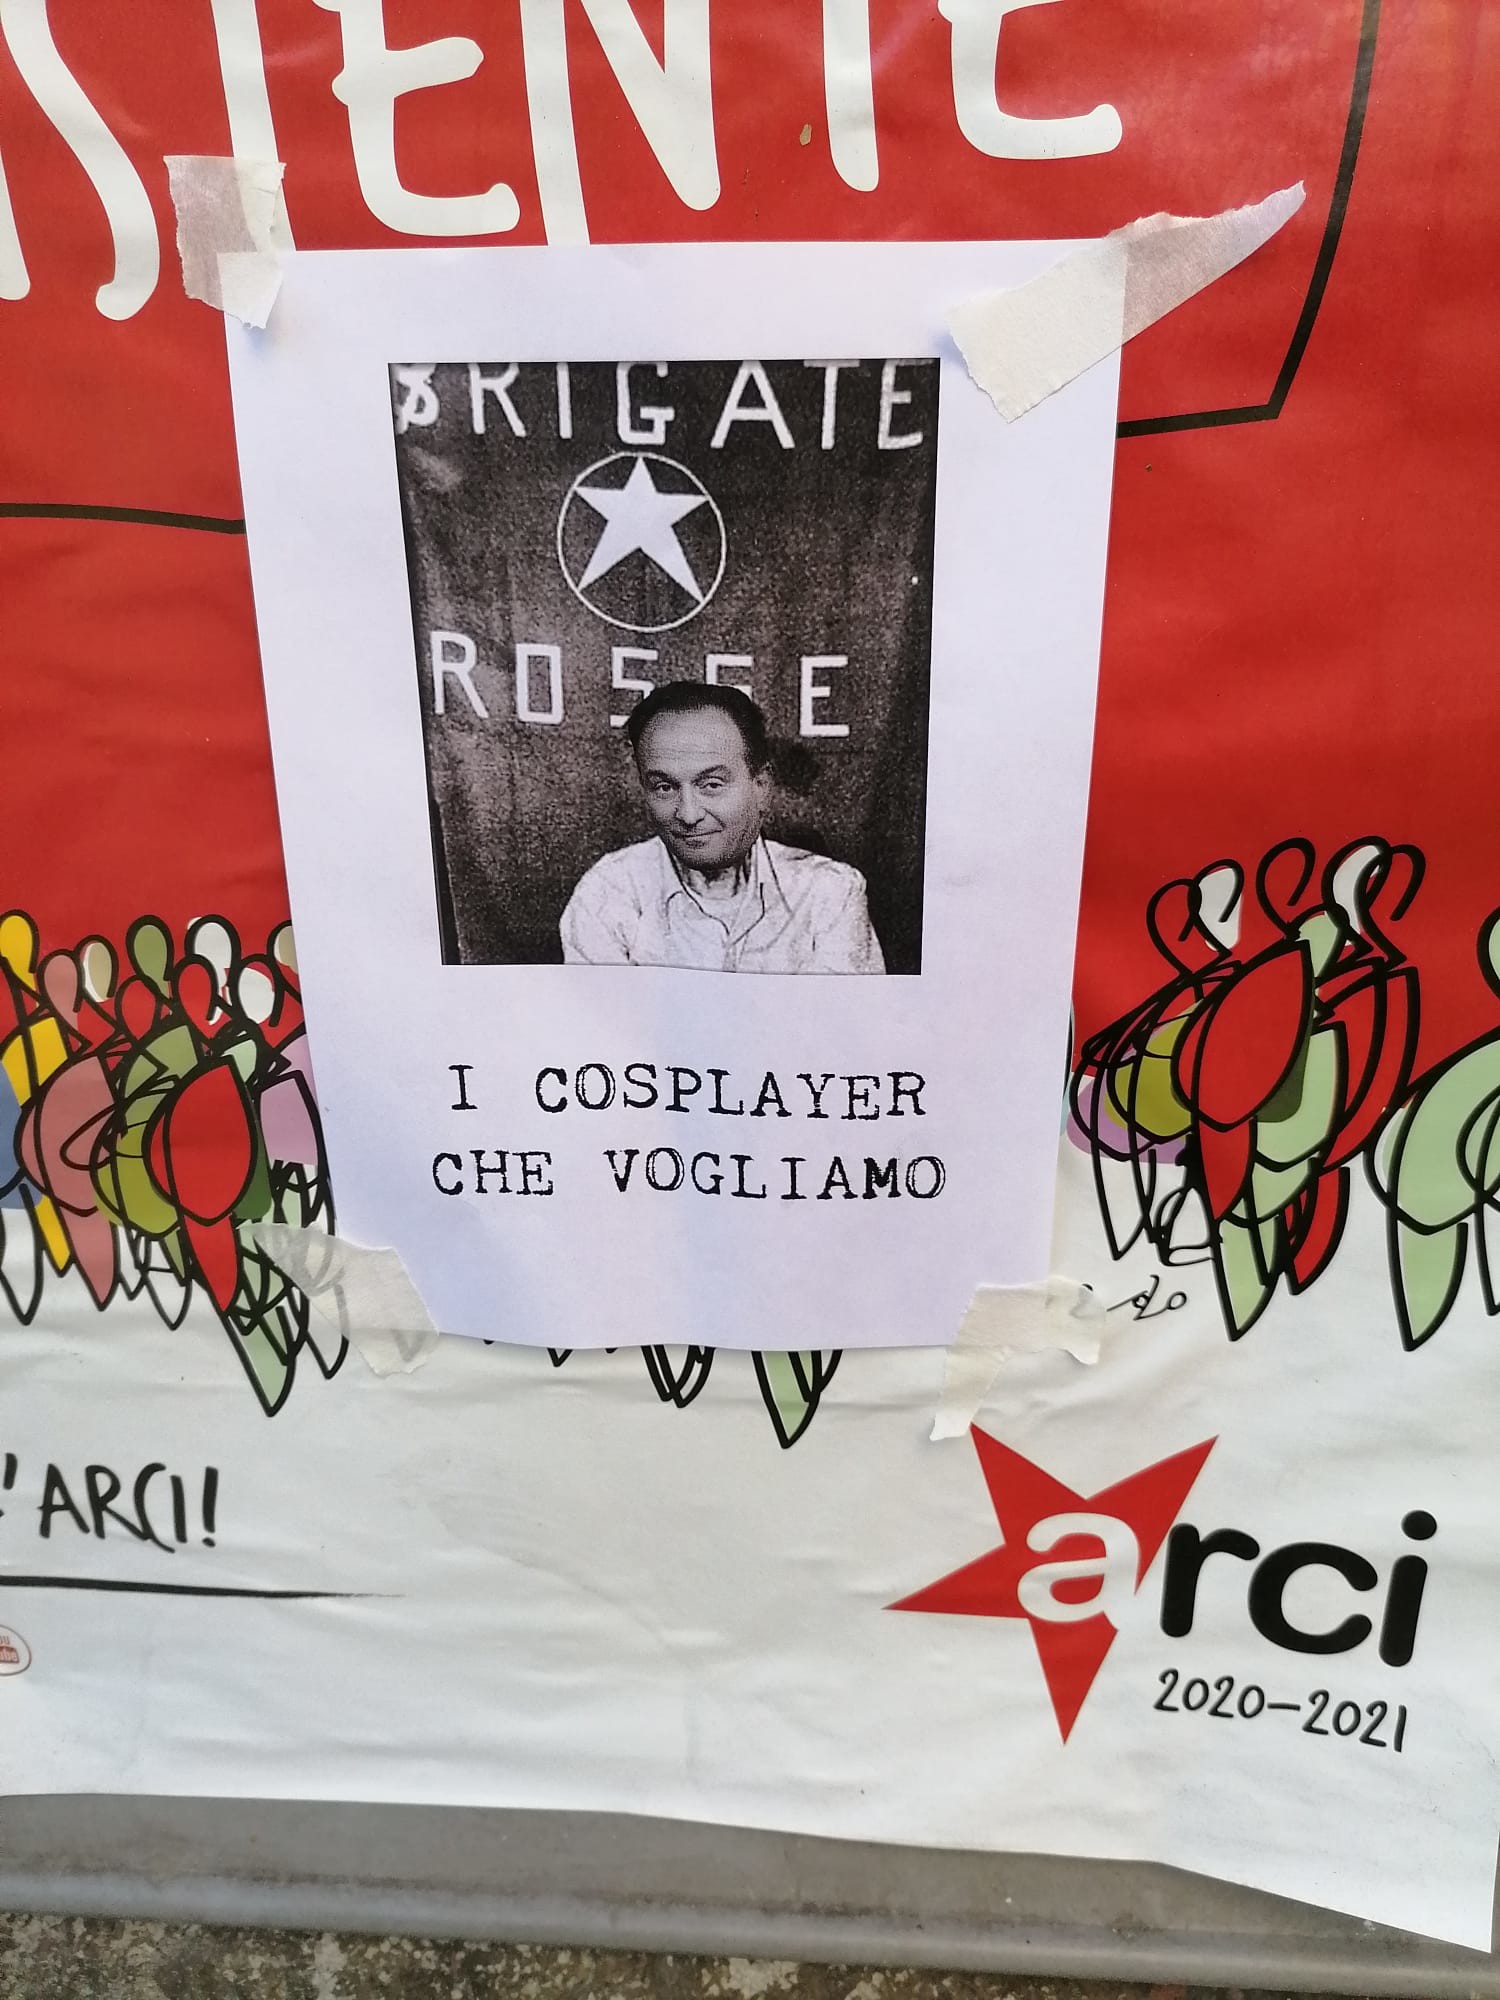 Manifesto Cirio come Moro a Torino, Askatasuna: Messinscena, noi abbiamo sempre firmato i nostri volantini